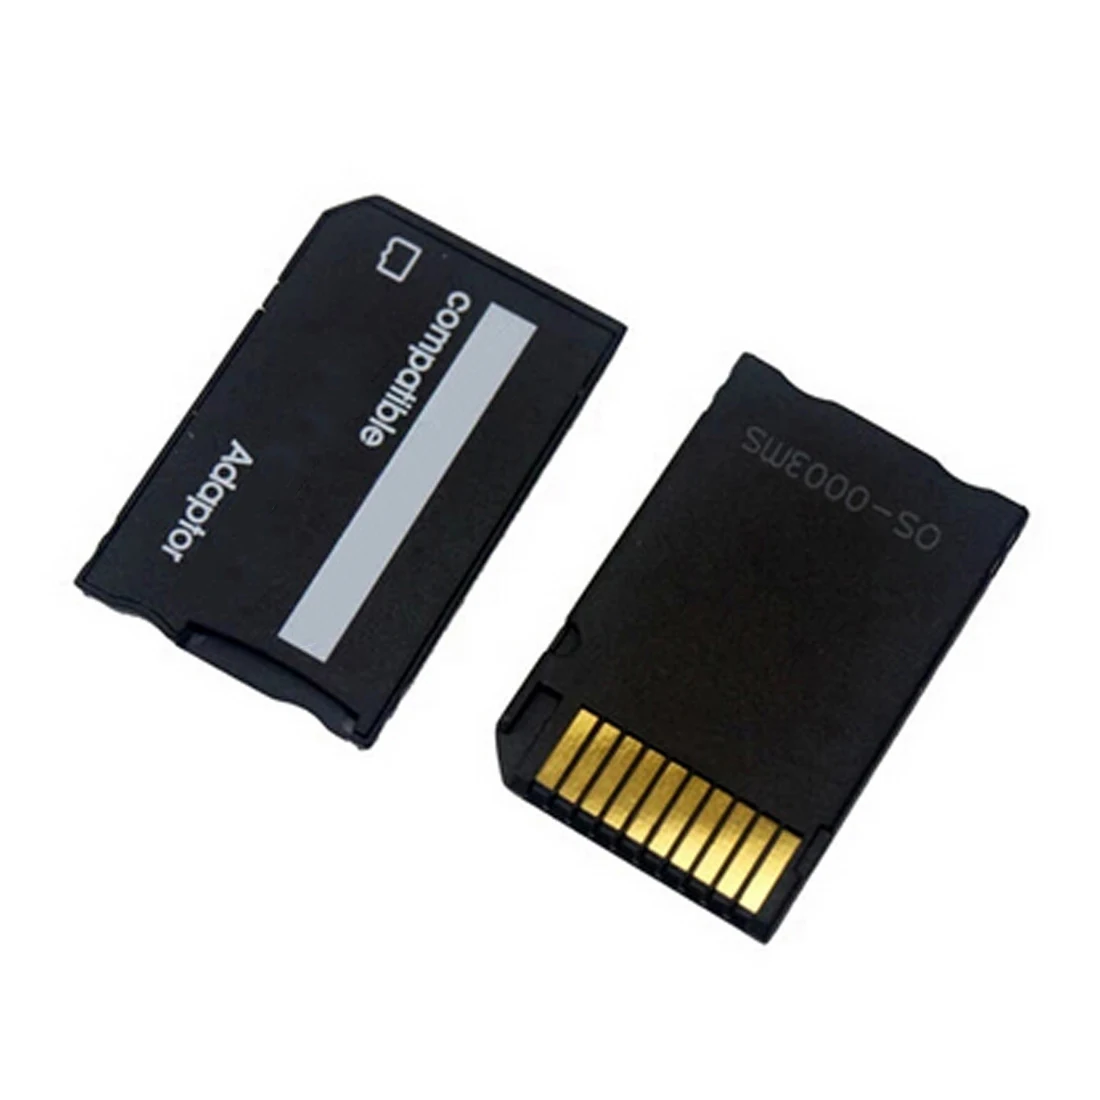 NOYOKERE Высокое качество TF кардридер карта памяти мини Micro SD карта адаптер для MS карта MS Pro Двойной переходник конвертер карта чехол